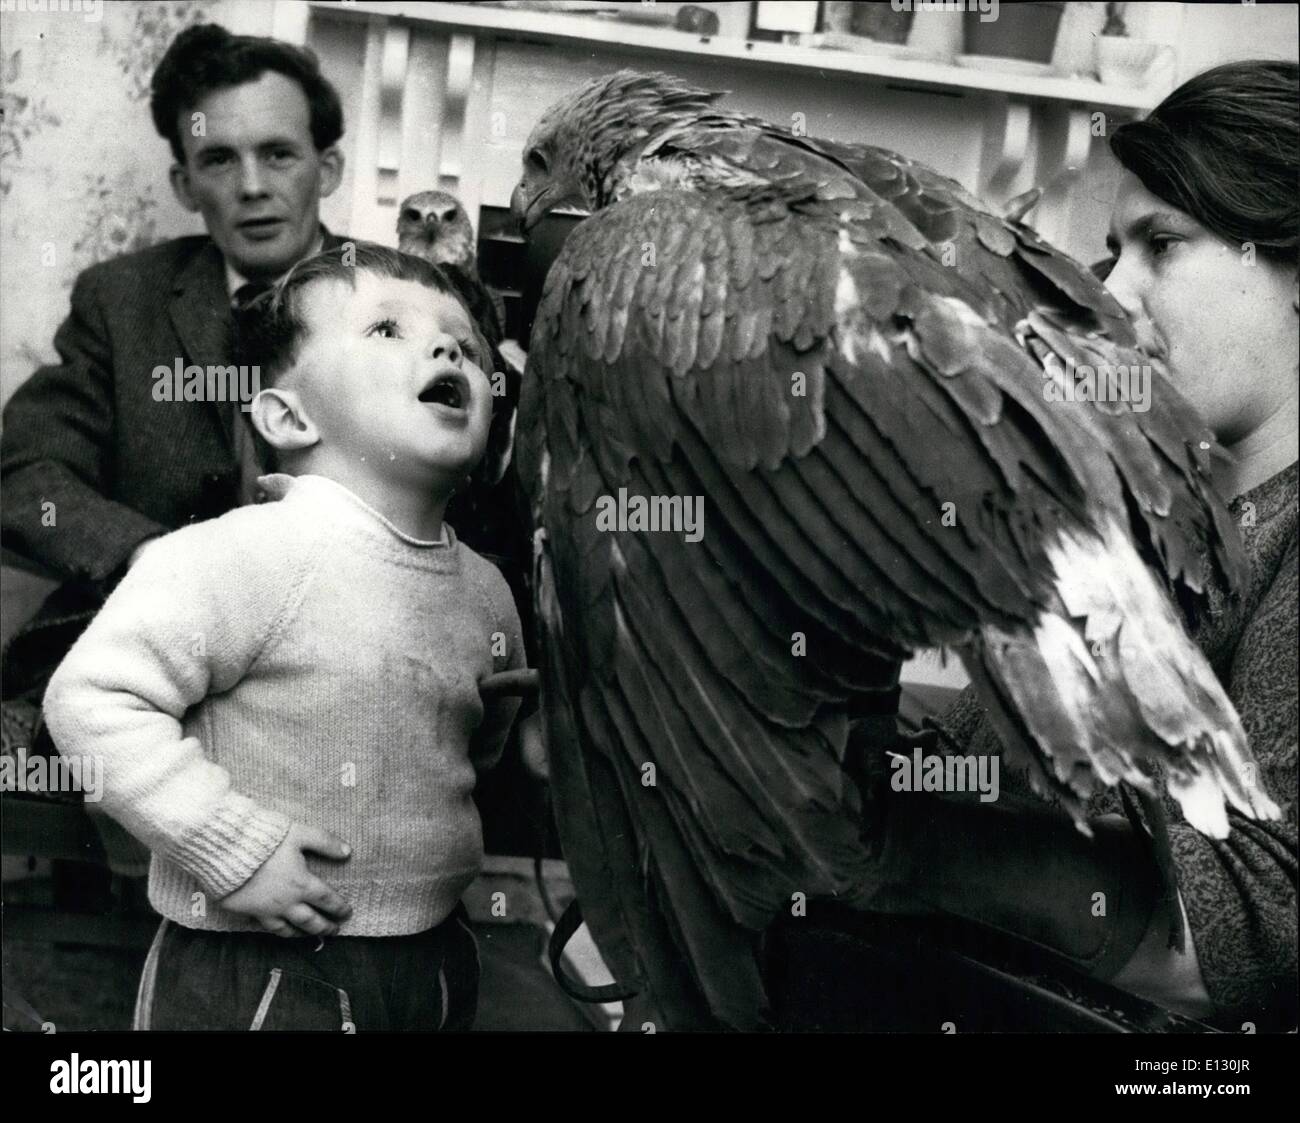 Febbraio 26, 2012 - Faccia a faccia - due-anno-vecchio Simon Oswald e un giovane con Testa Grigia la pesca Eagle. Onorevole Oswald veglia con materna Foto Stock